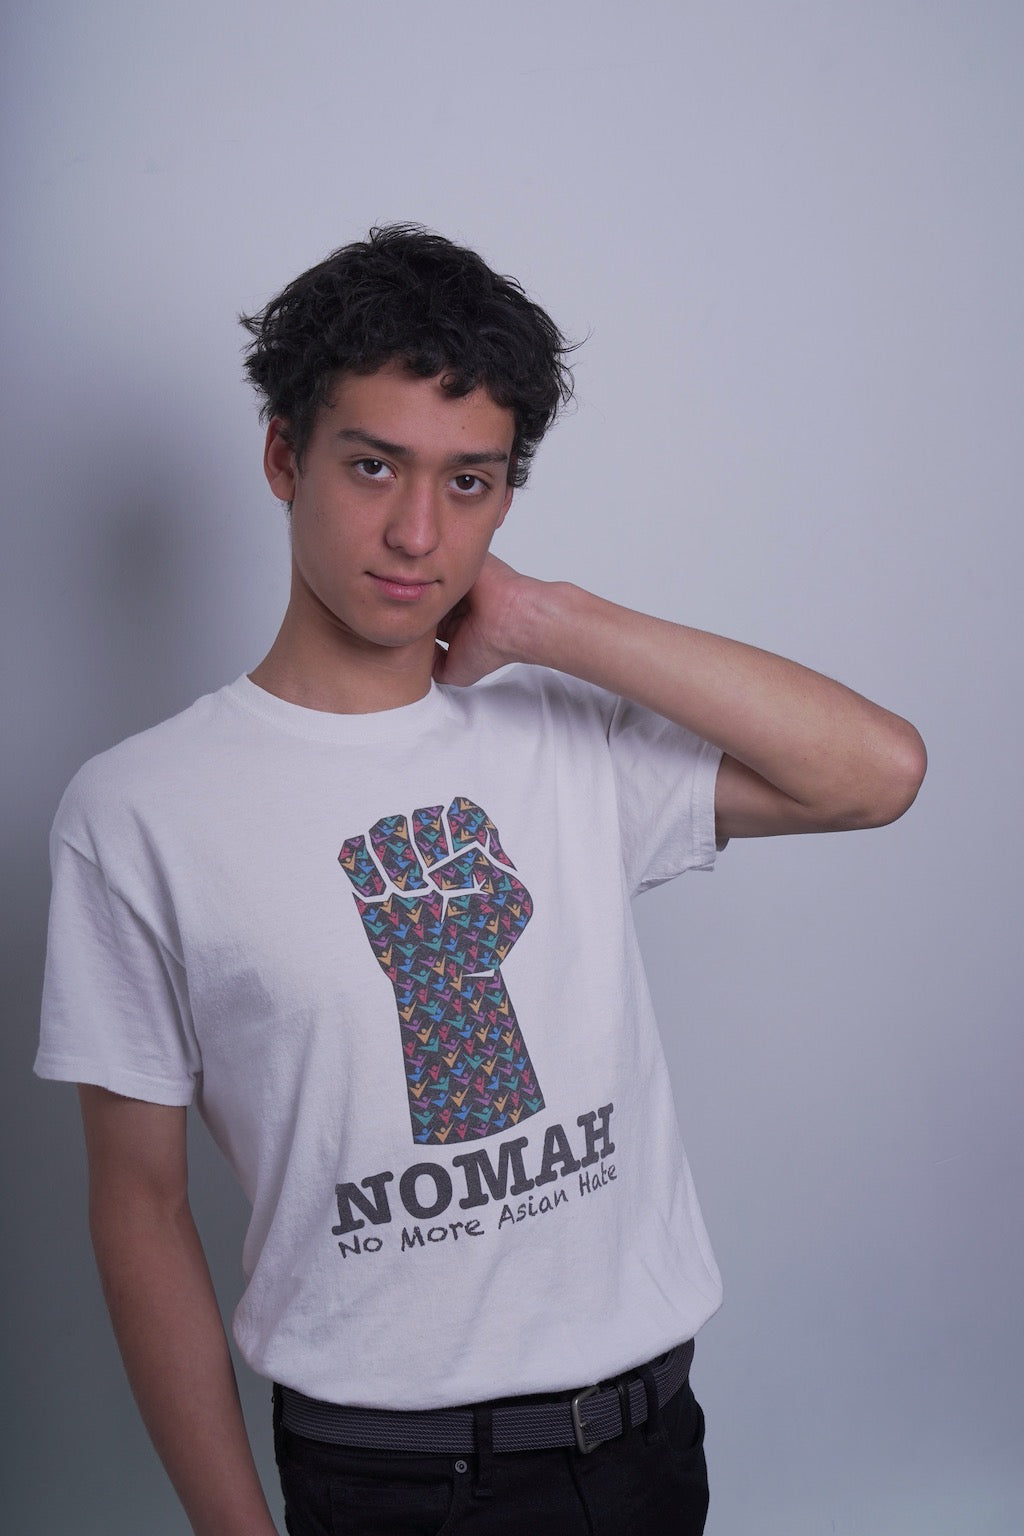 NOMAH™ - Logo T-Shirt